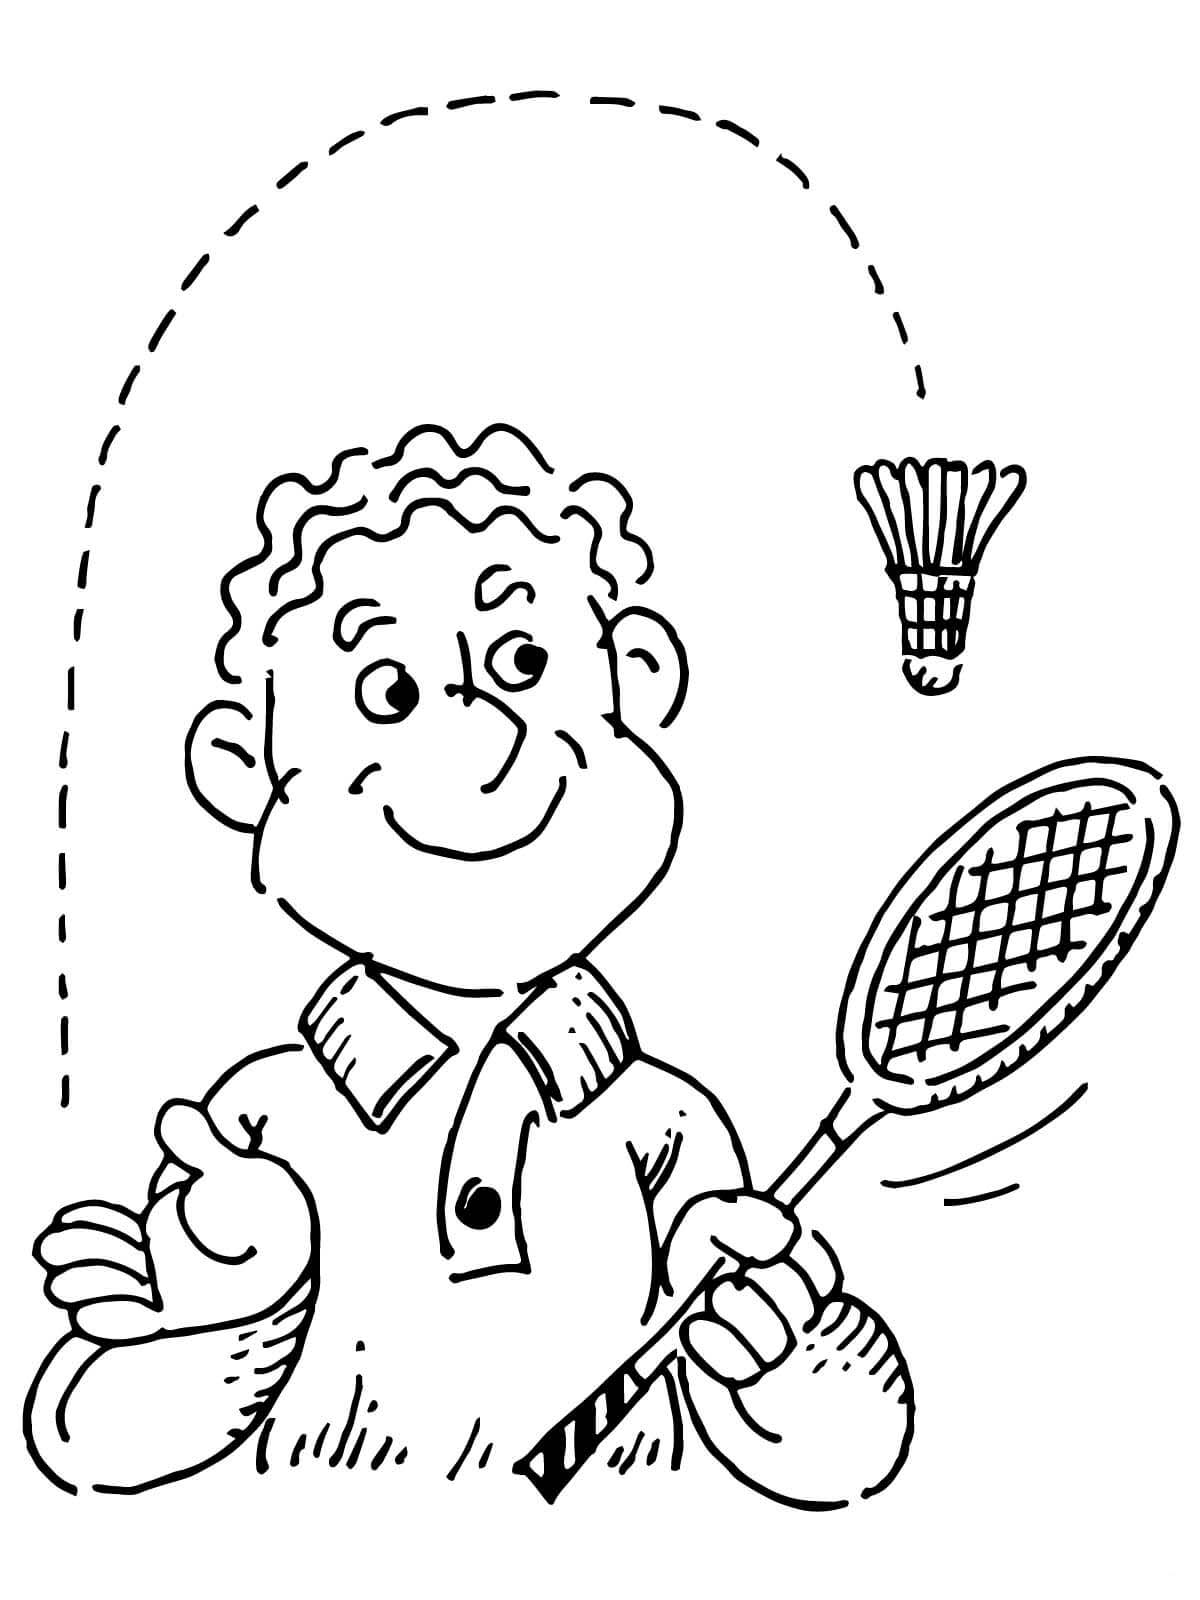 Coisas do badminton